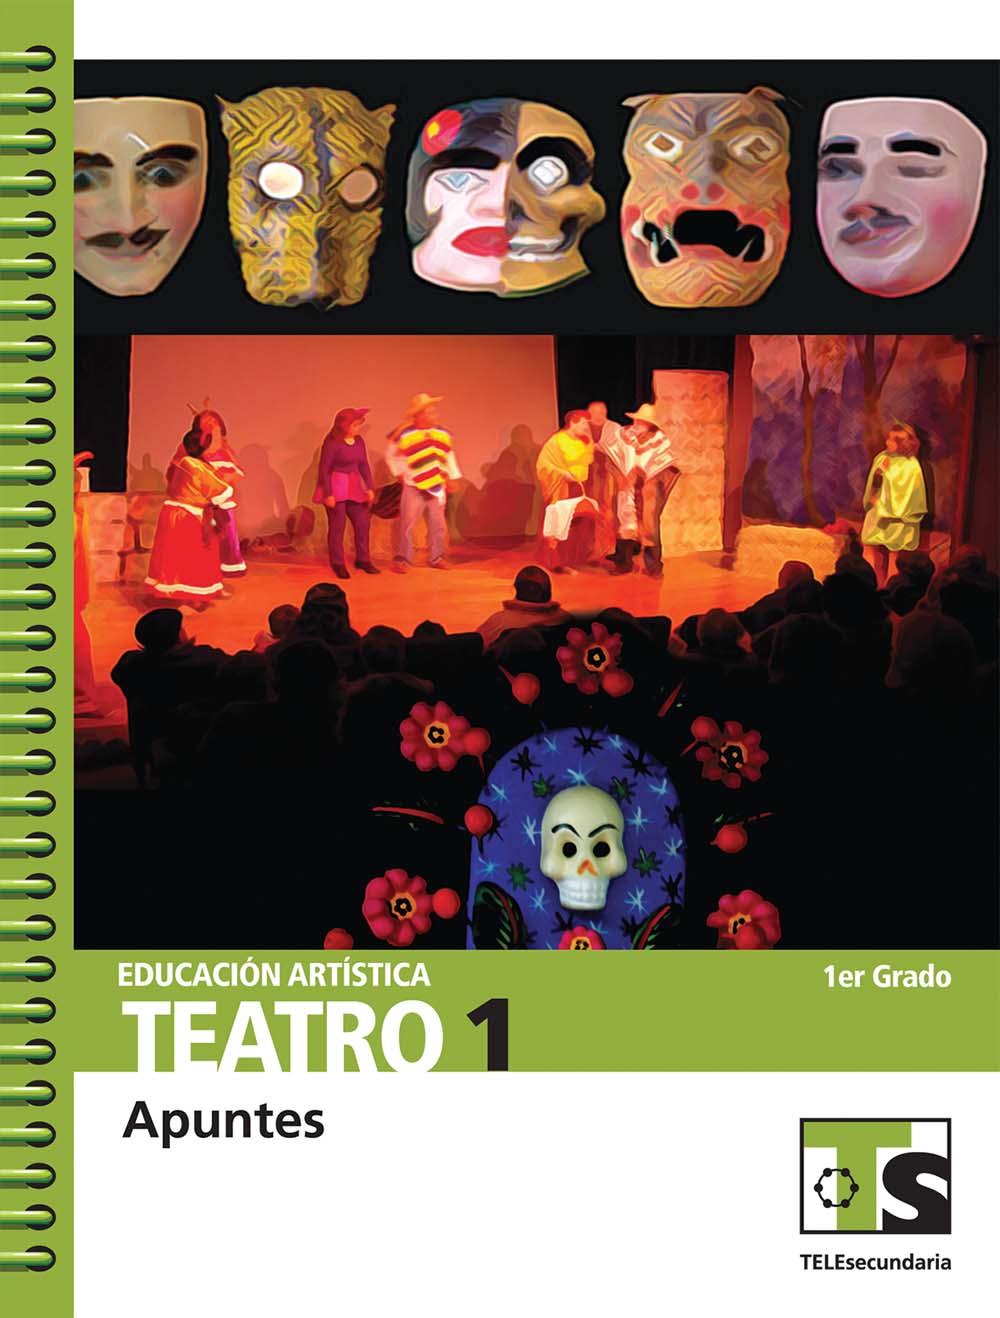 Educación Artística. Teatro 1. Apuntes, Editorial: Secretaría de Educación Pública, Nivel: Telesecundaria, Grado: 1